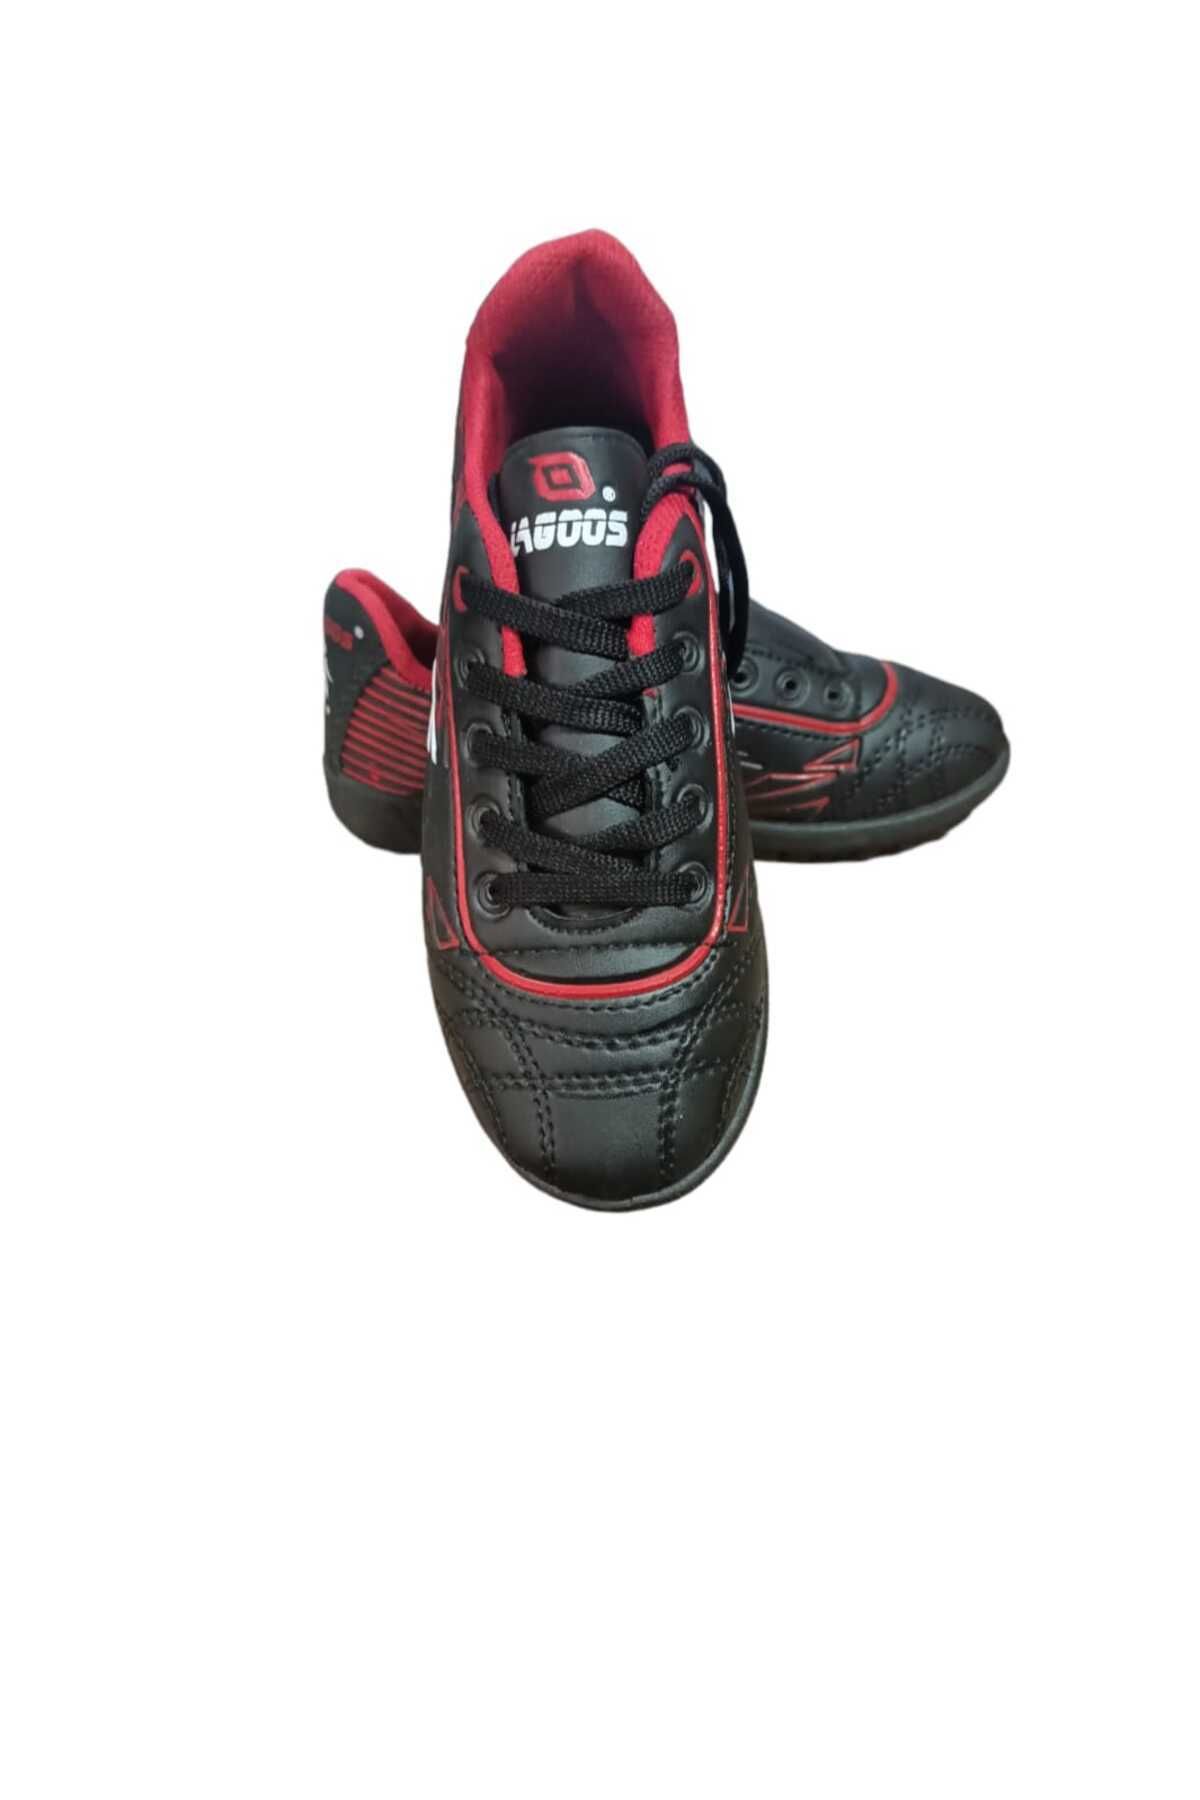 Lagoos Çocuk Halı Saha Futbol Ayakkabısı Siyah Kırmızı